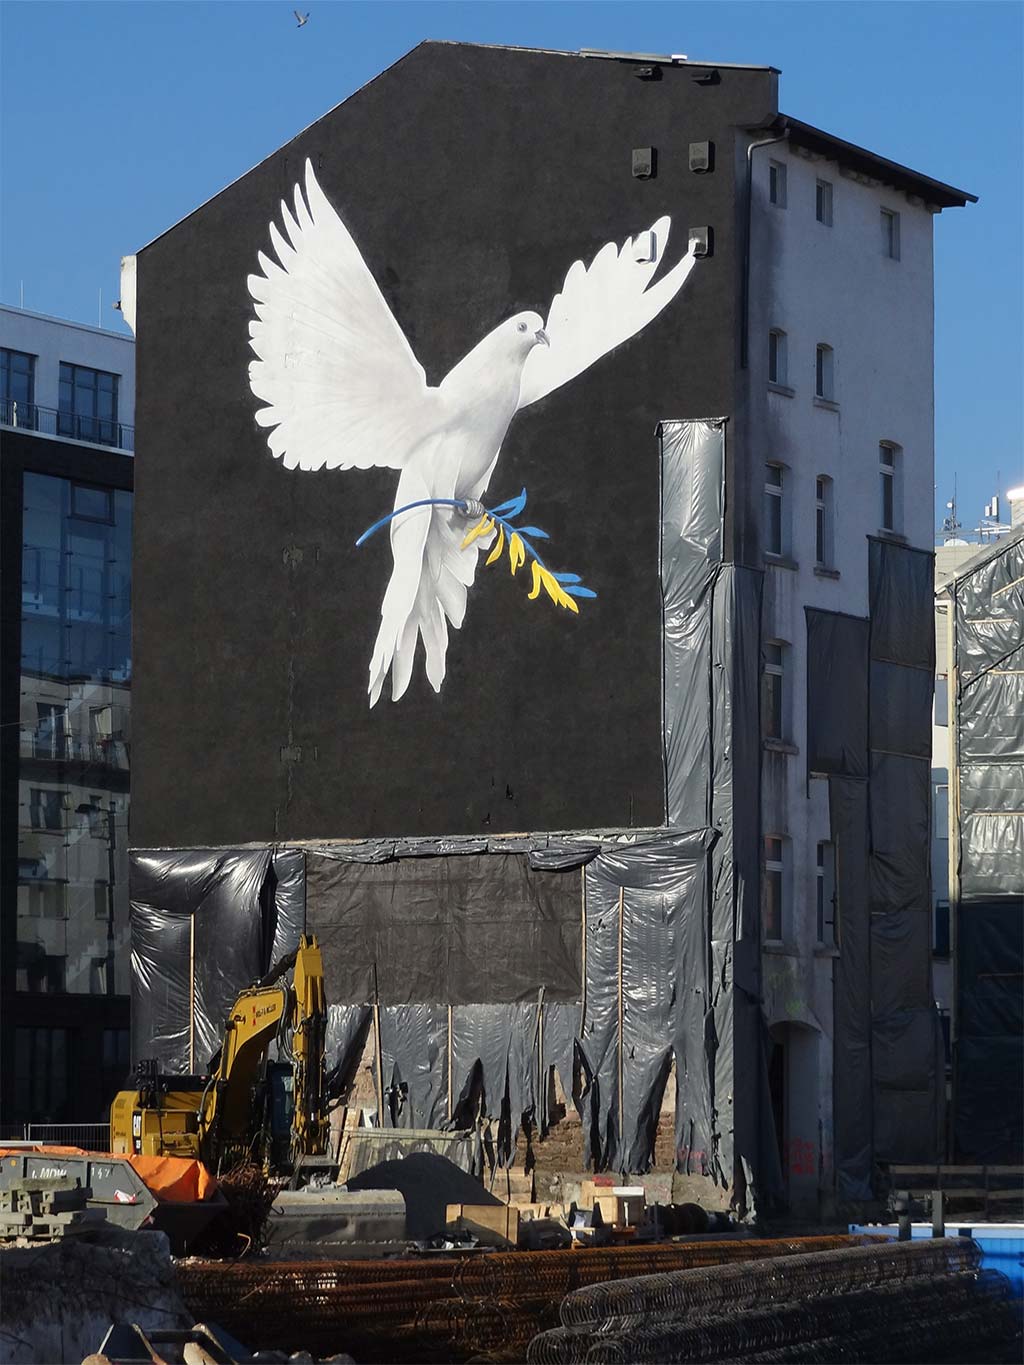 Wegen Krieg in der Ukraine: Hausfassade zeigt Friedenstaube mit Olivenbaumzweig in den Farben gelb und blau